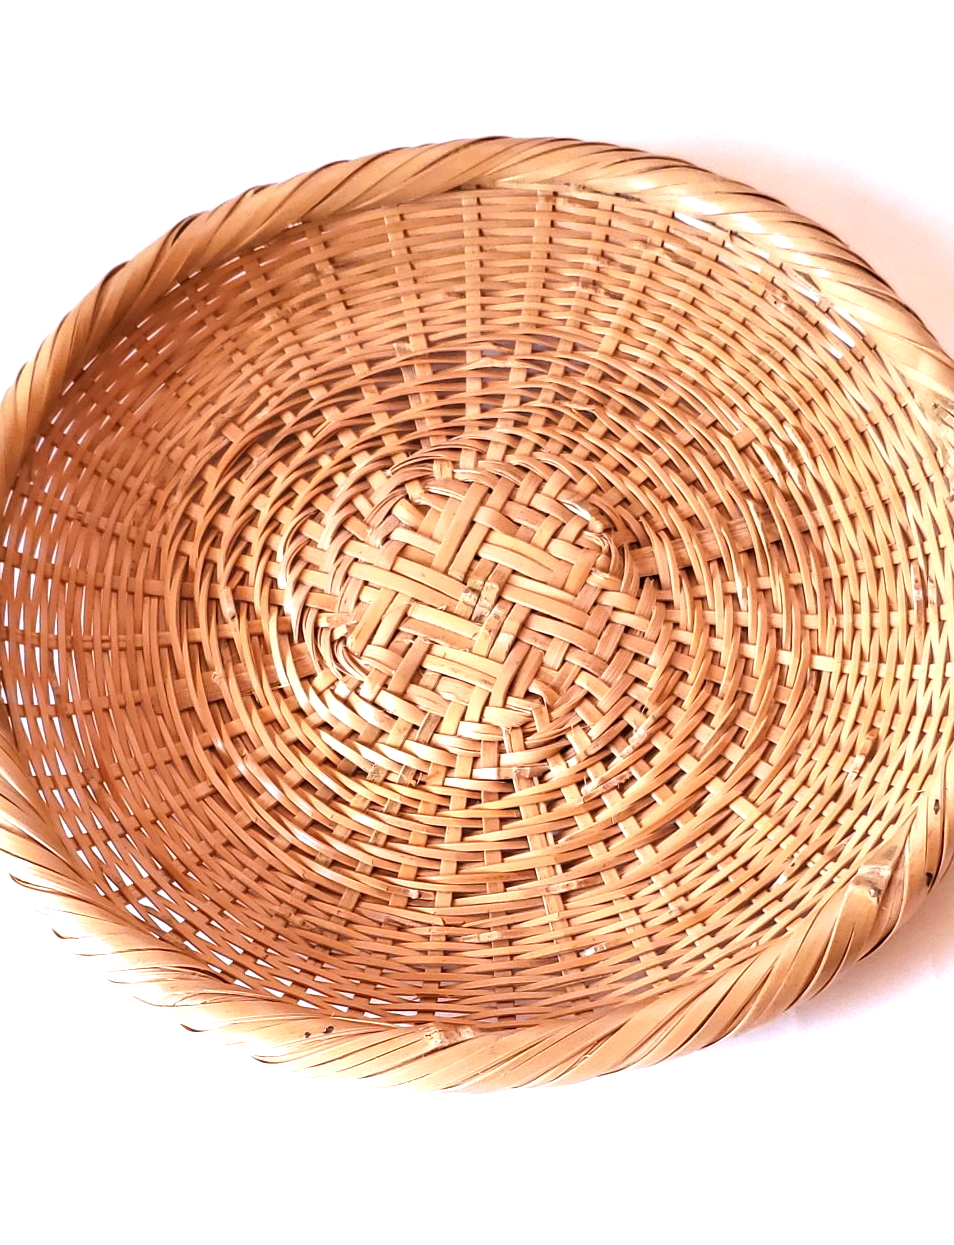 buckwheat　basket